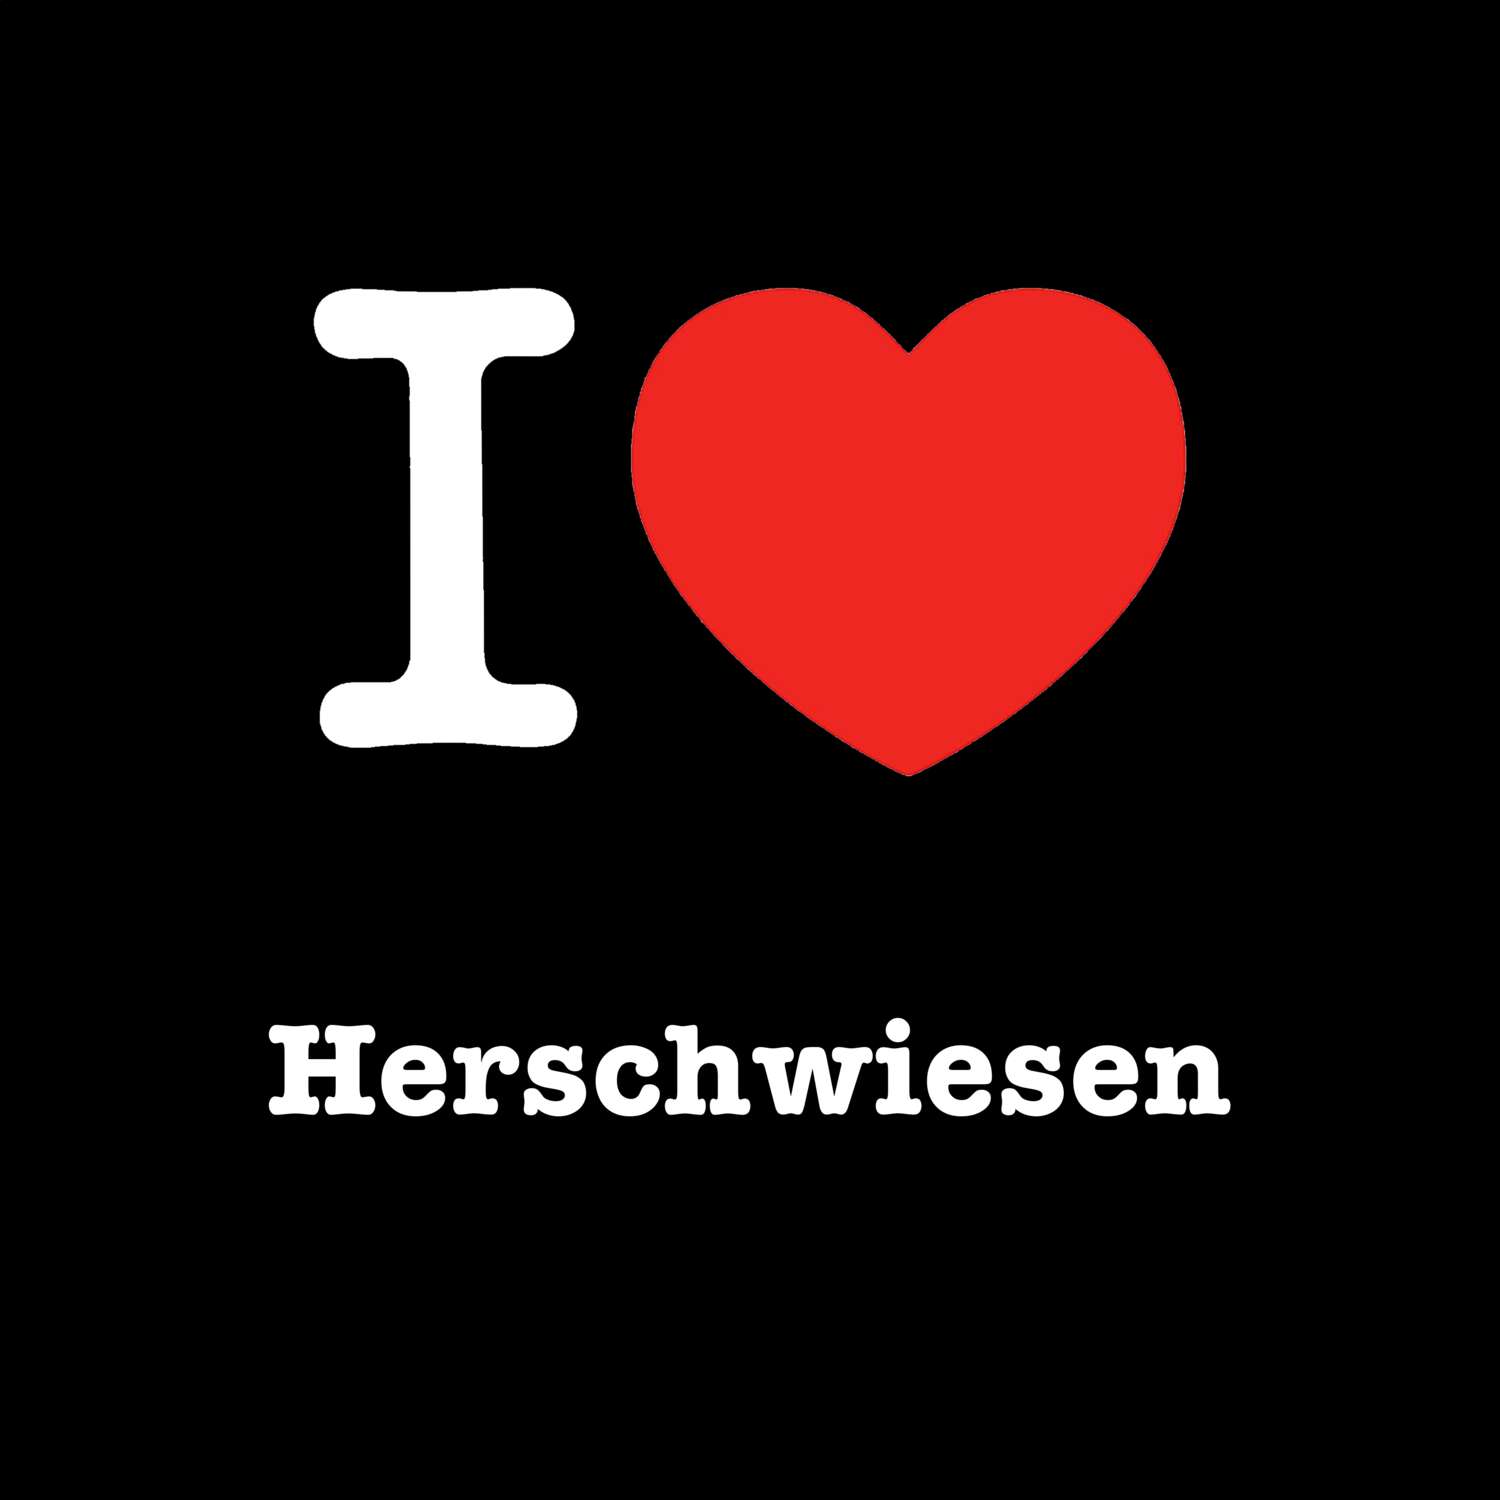 Herschwiesen T-Shirt »I love«